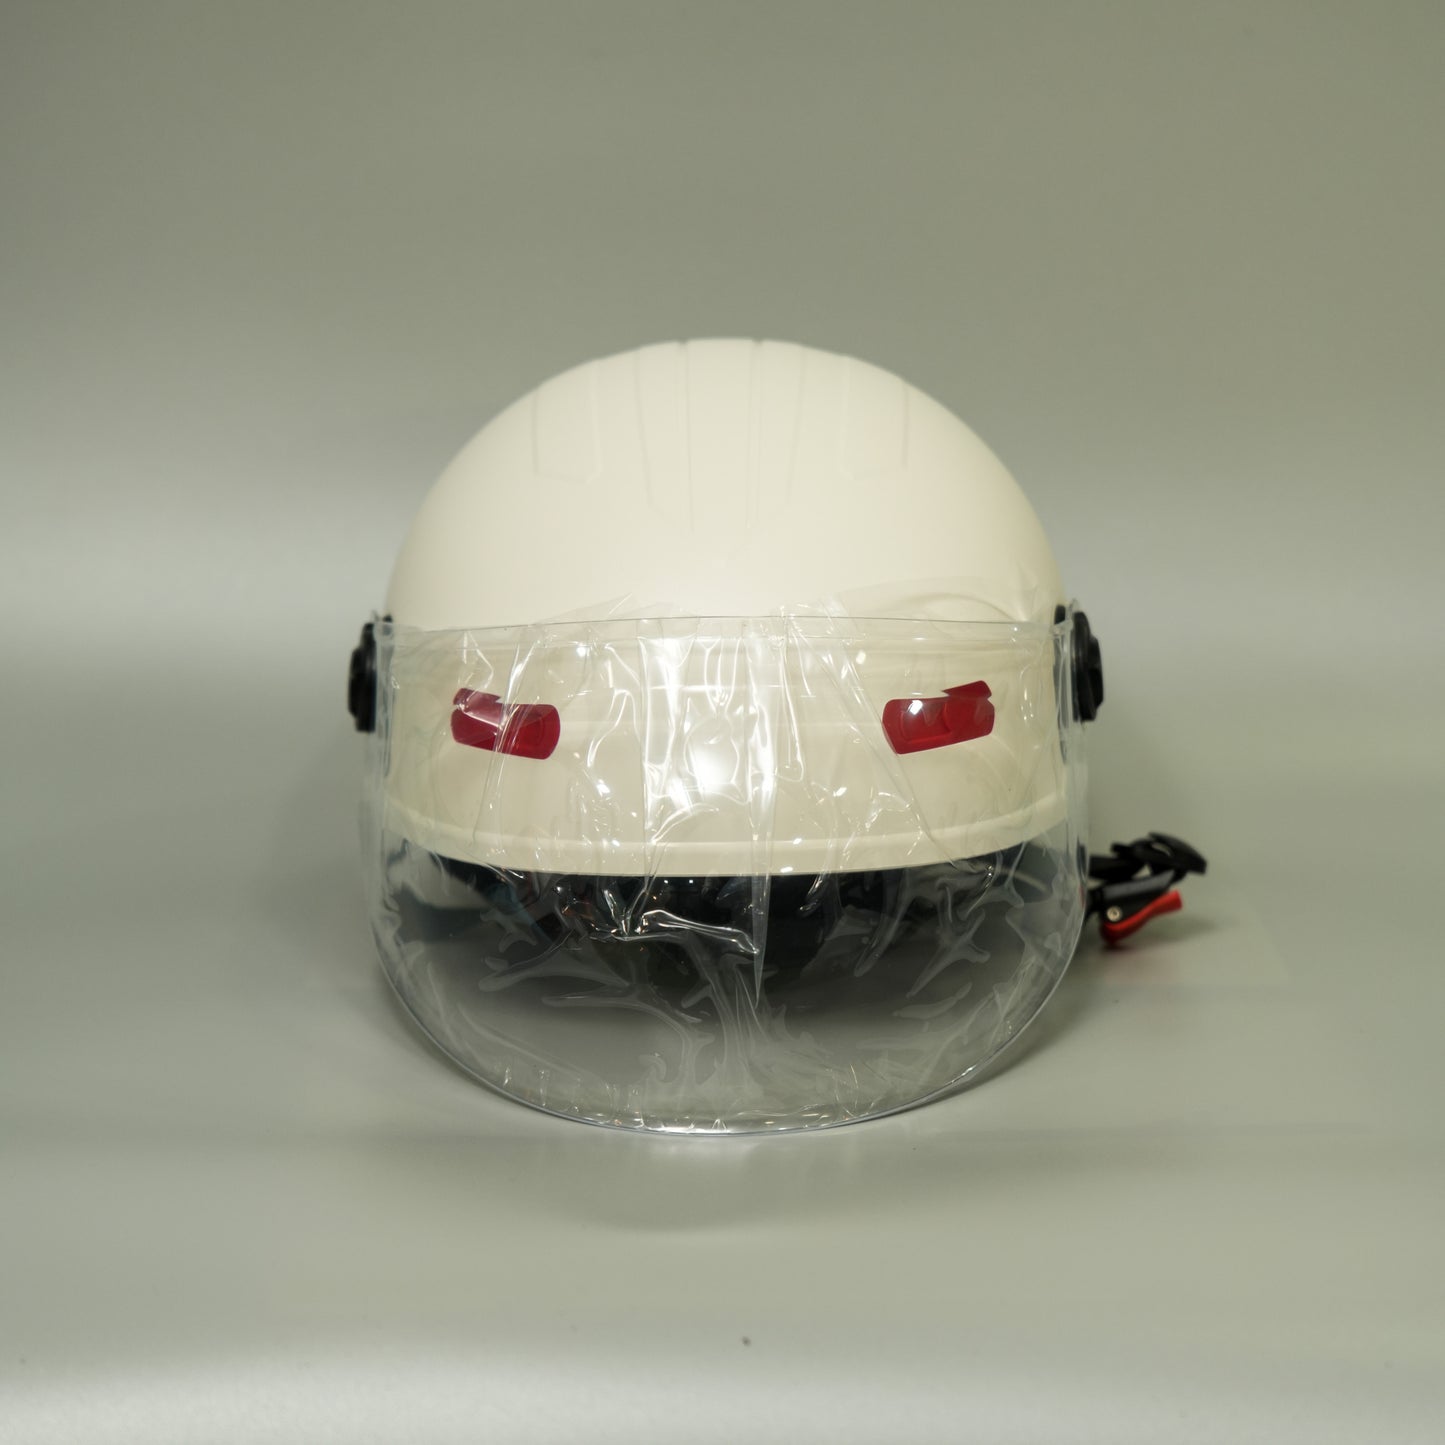 Sundiro Honda Helmet